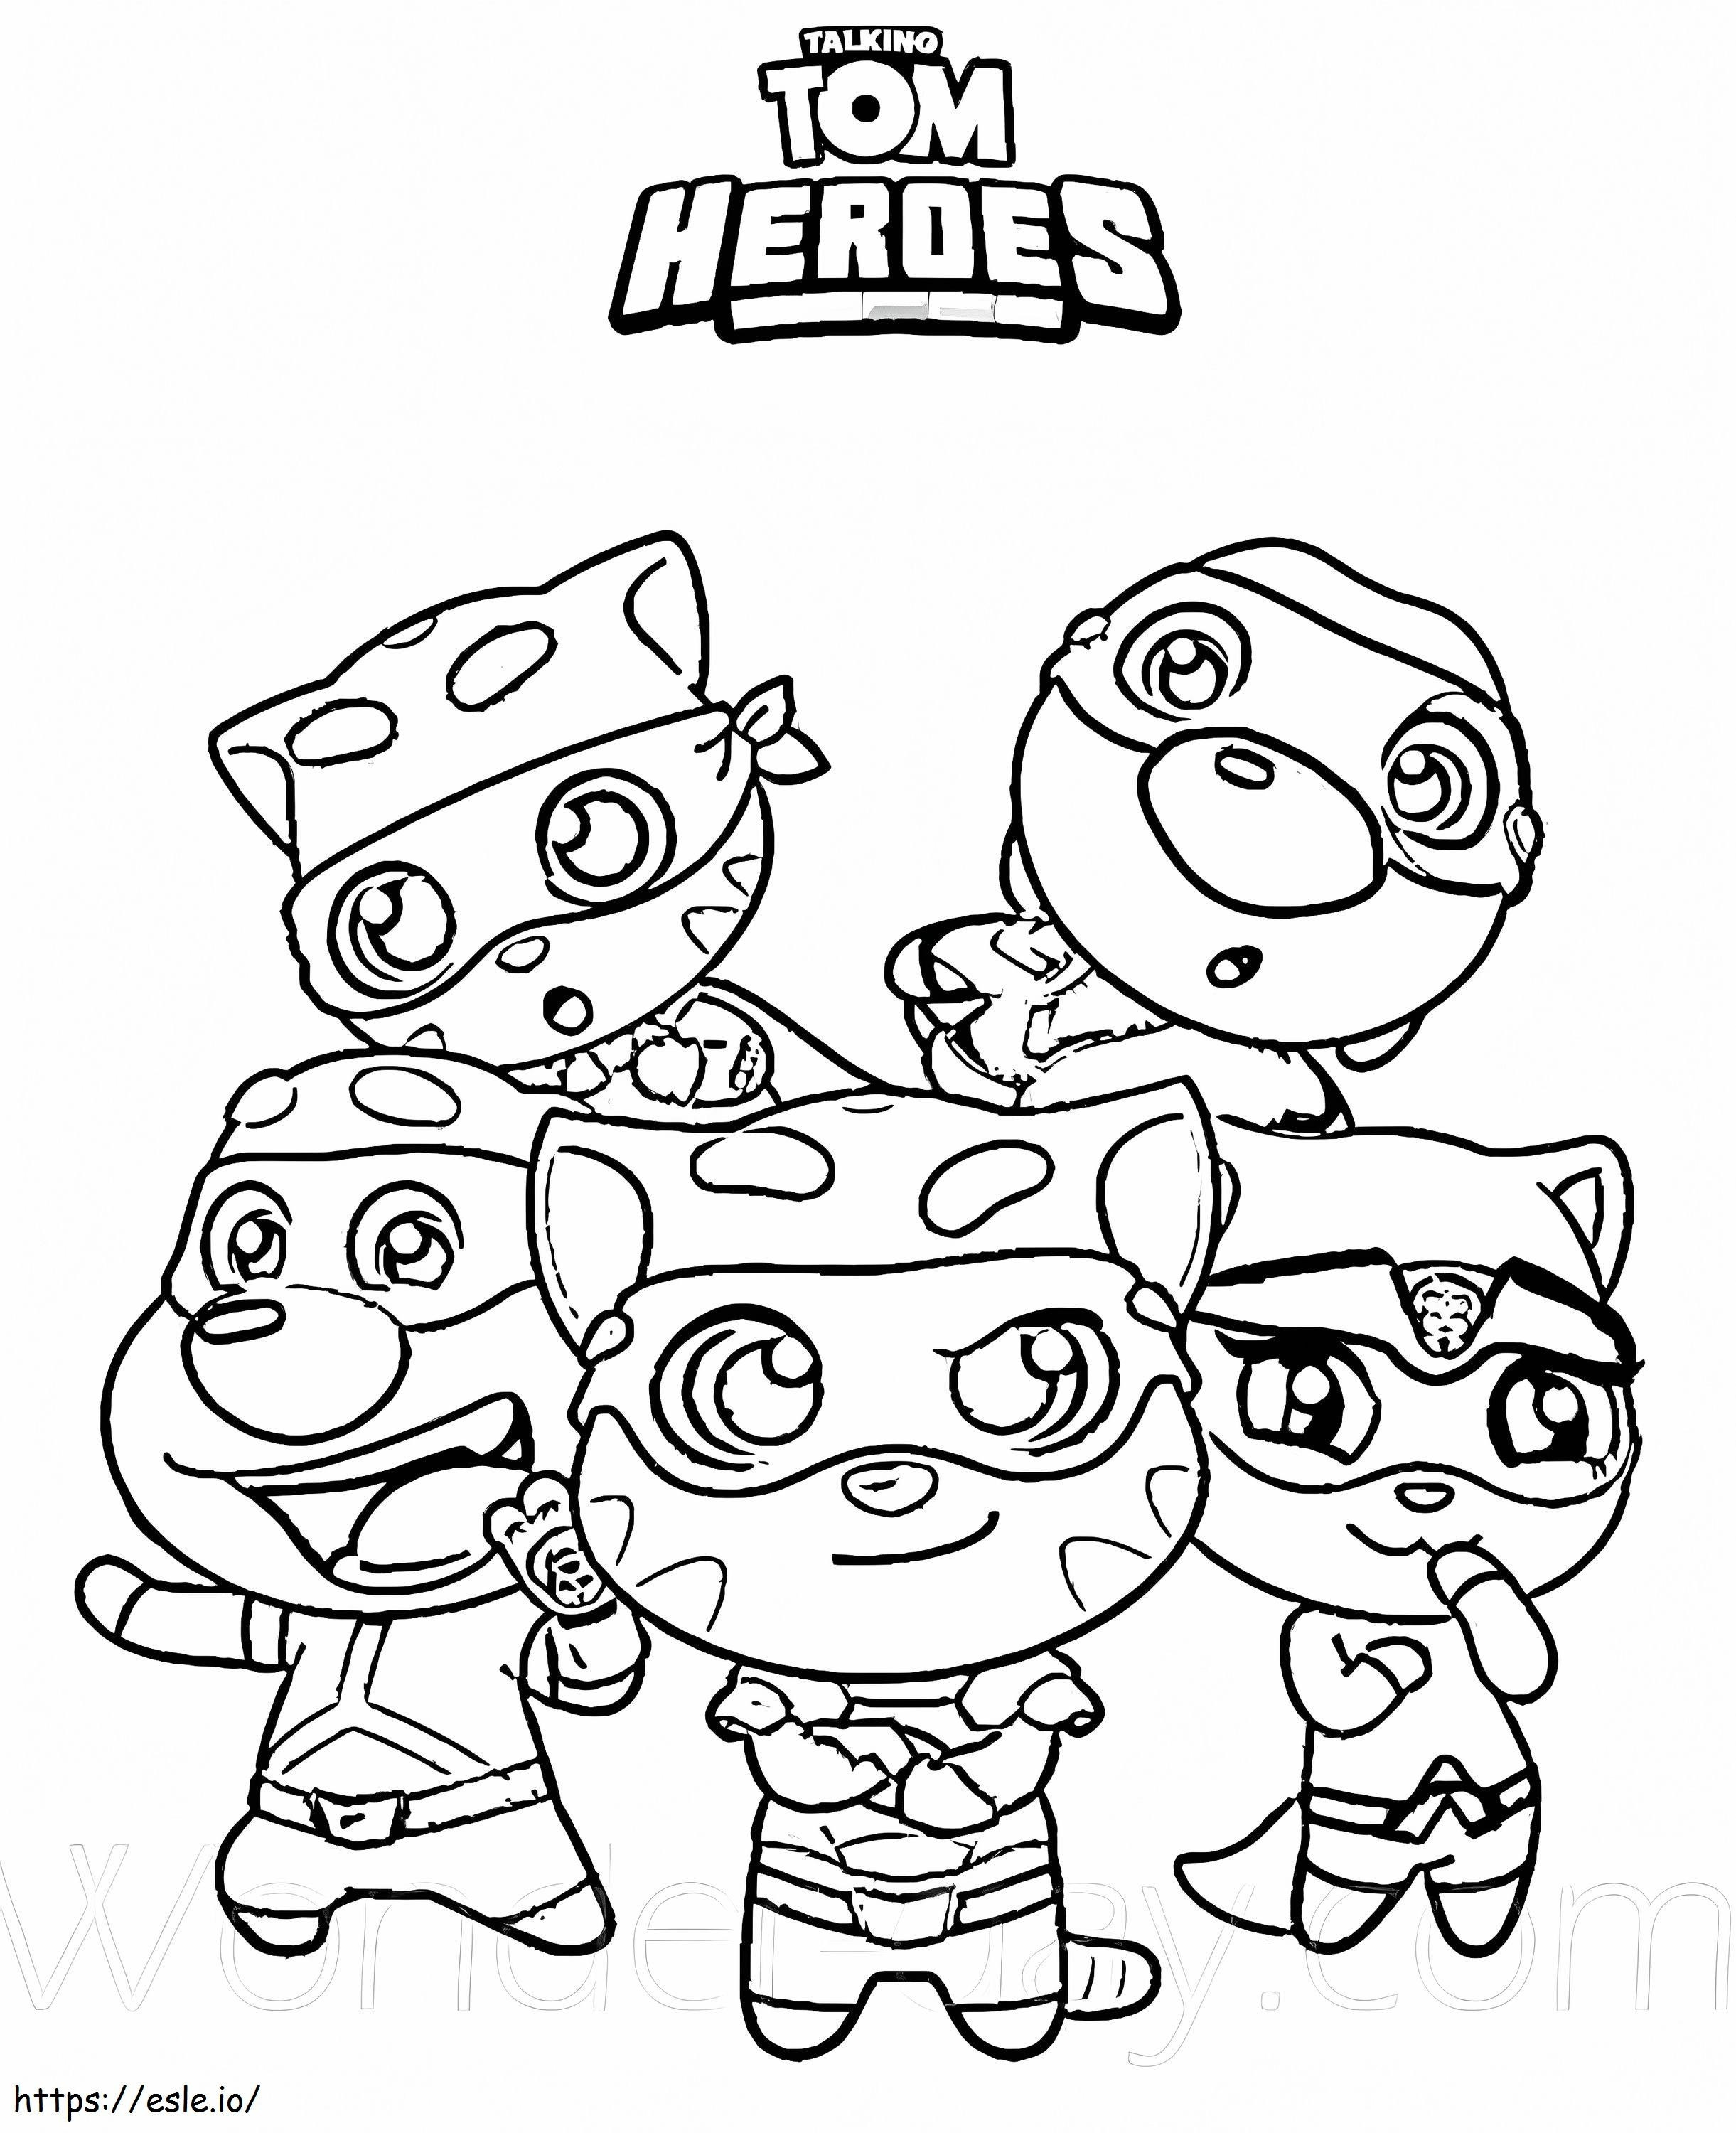 Equipe Talking Heroes para colorir